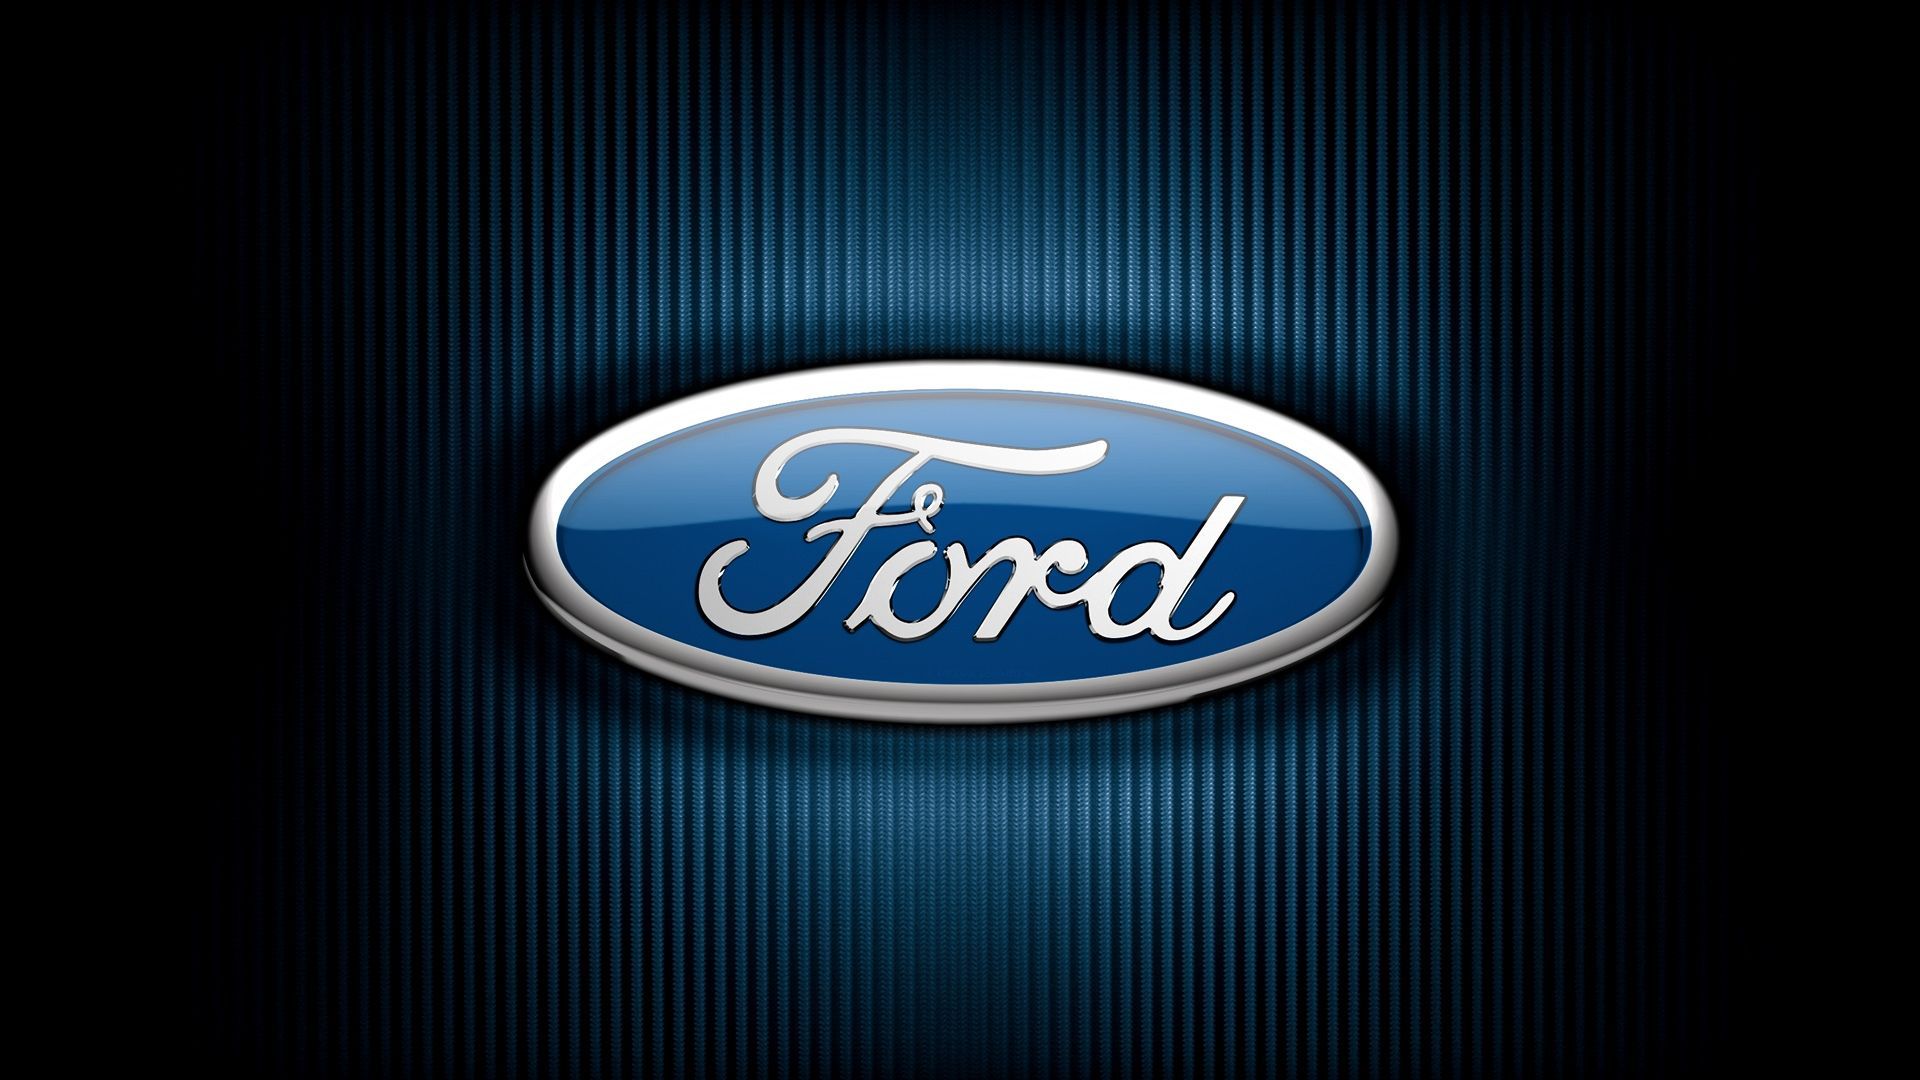 Ford emblem wallpaper